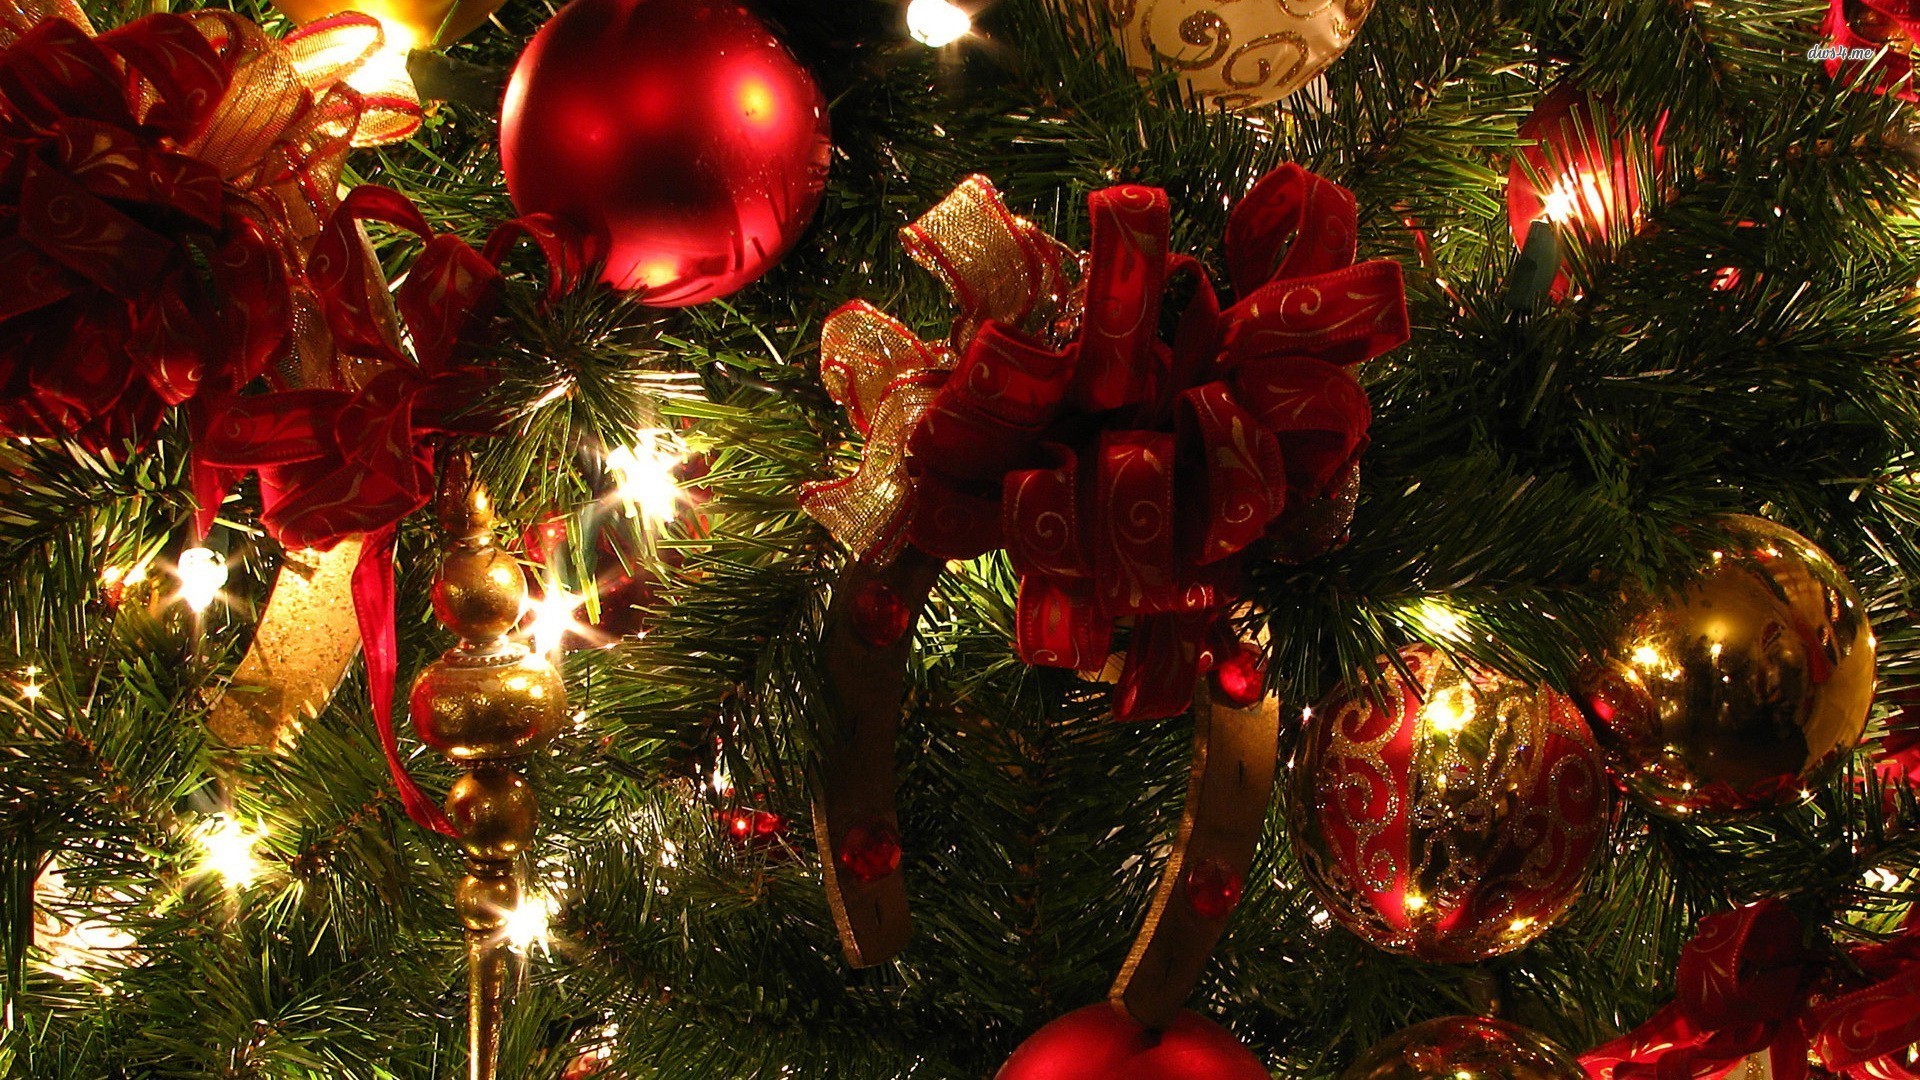 navidad fondos de pantalla hd widescreen,decoración navideña,decoración navideña,árbol de navidad,navidad,árbol